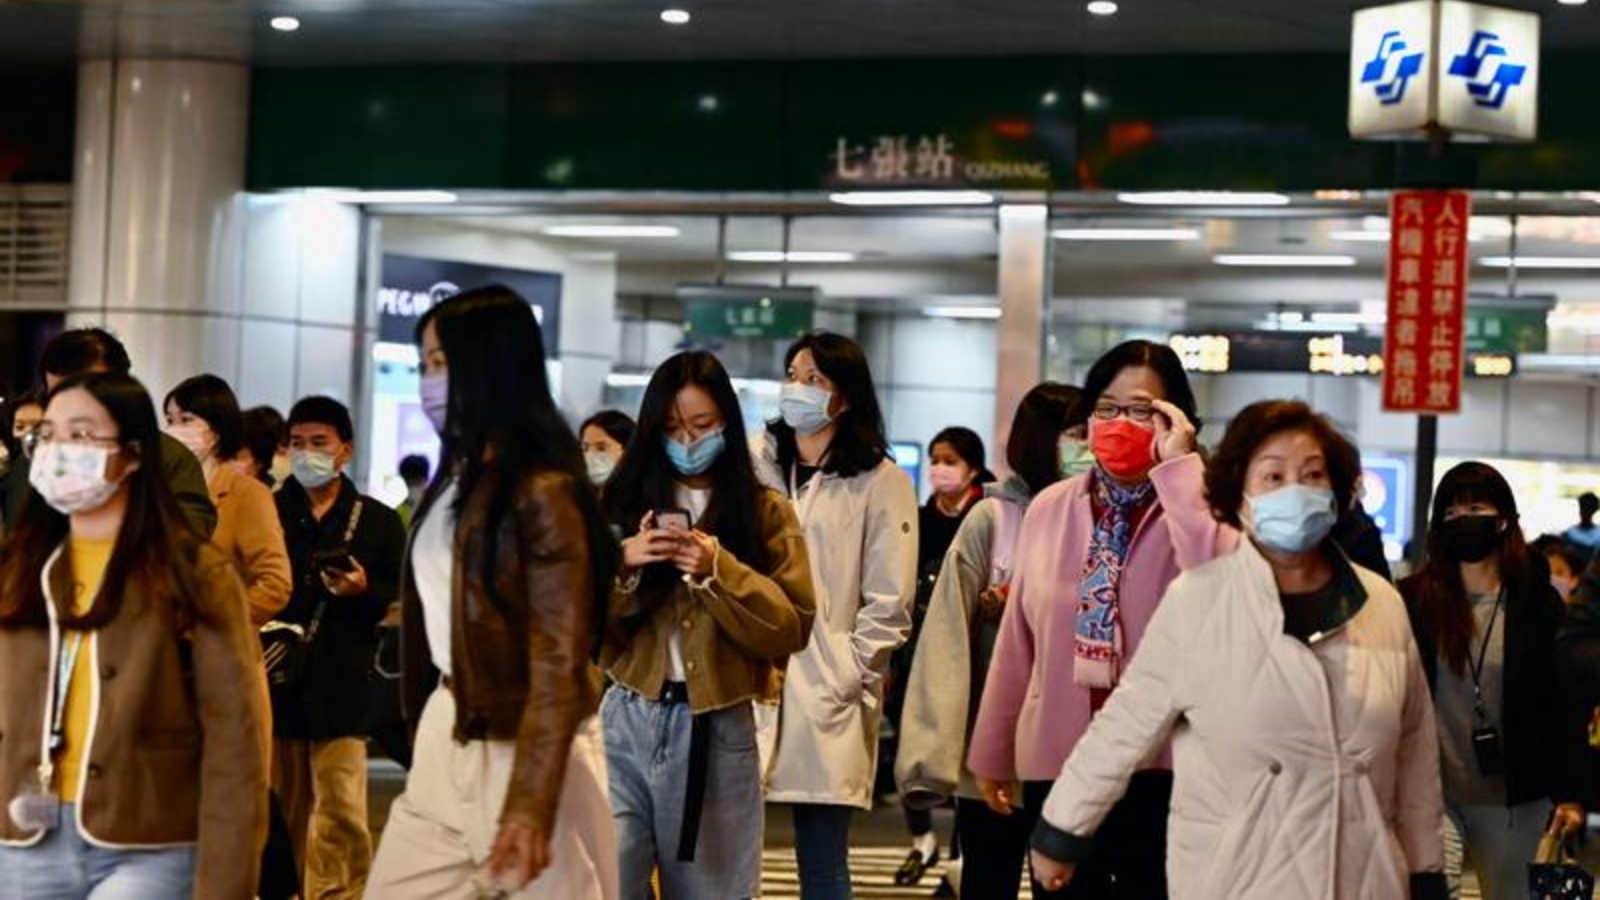 ركاب يخرجون من محطة النقل الجماعي السريع (MRT) في شينديان في مدينة تايبيه الجديدة في 3 يناير 2022، بعد زلزال قوي ضرب قبالة ساحل شرق تايوان وشعر به الناس في العاصمة تايبيه